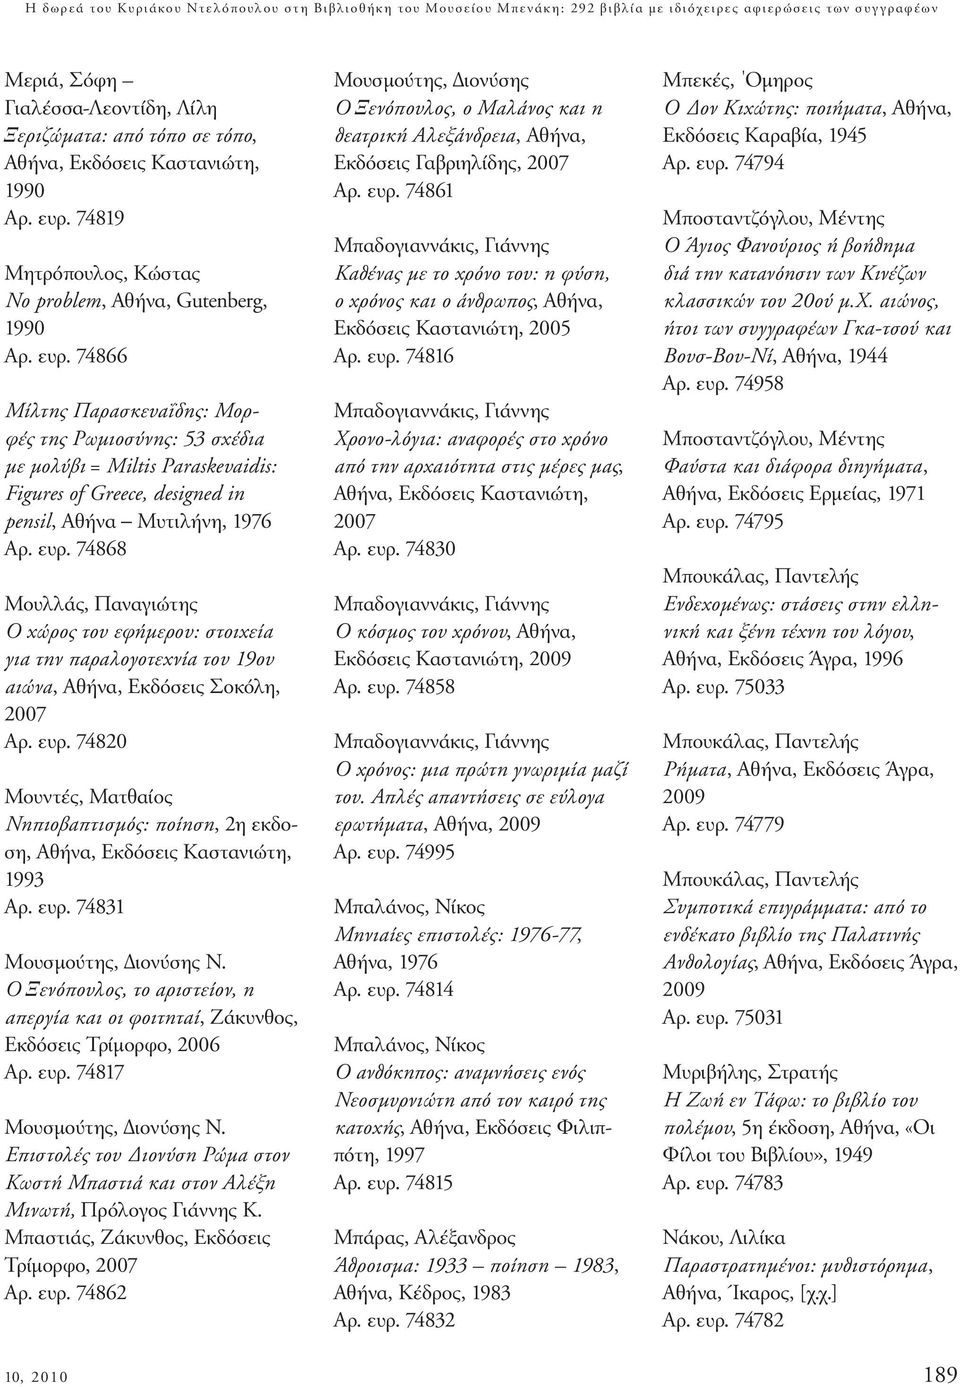 ευρ. 74868 Μουλλάς, Παναγιώτης Ο χώρος του εφήµερου: στοιχεία για την παραλογοτεχνία του 19ου αιώνα, Αθήνα, Eκδόσεις Σοκόλη, 2007 Αρ. ευρ.